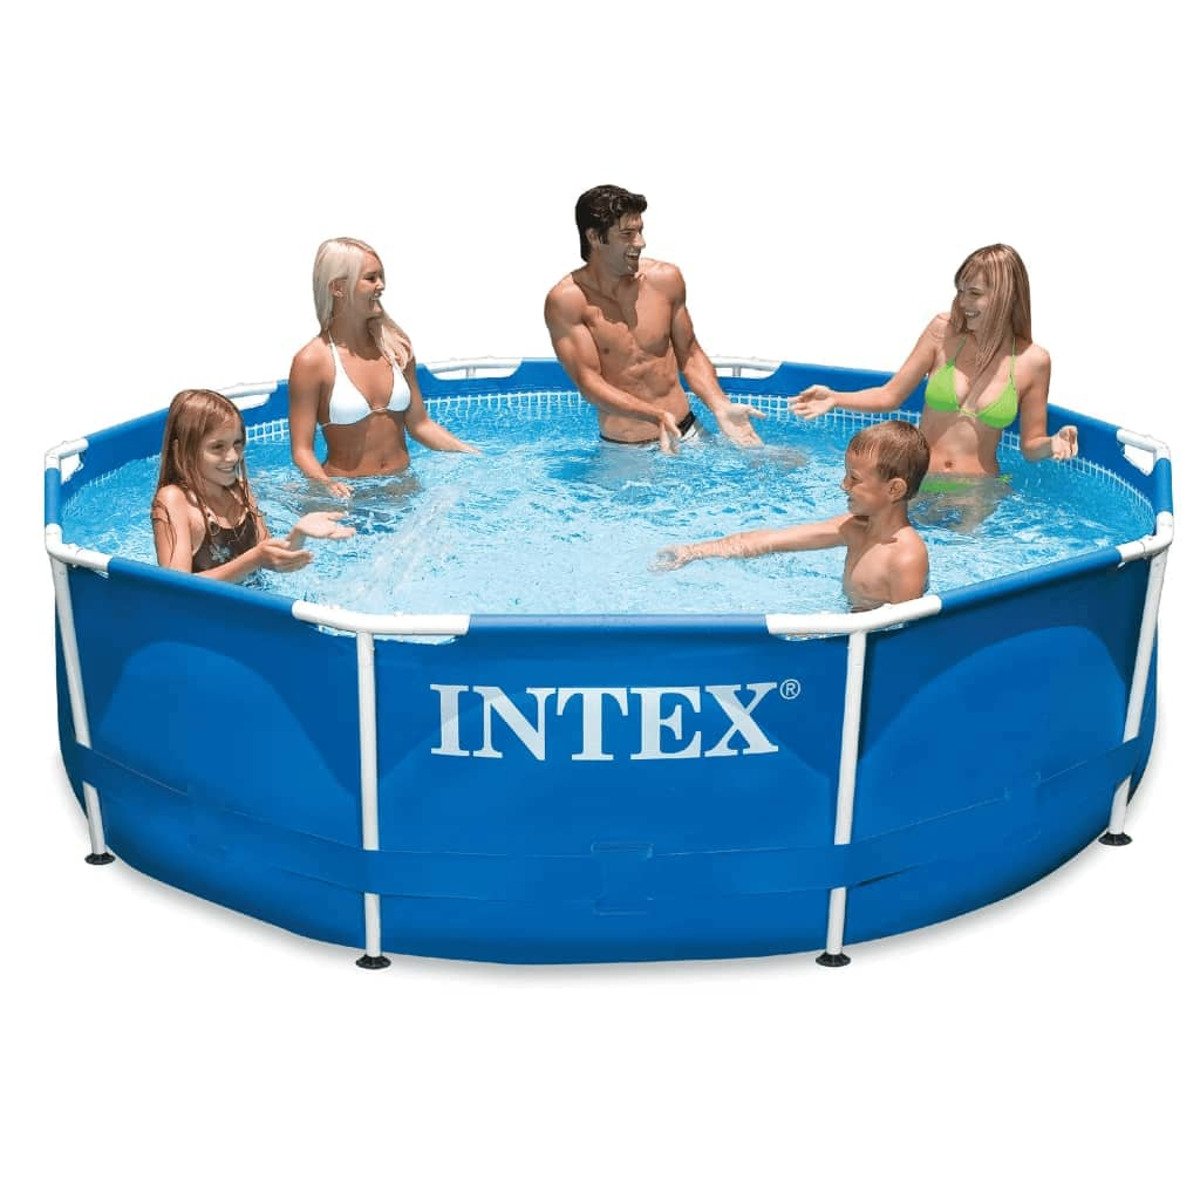 INTEX 3202755 Pool, Blau